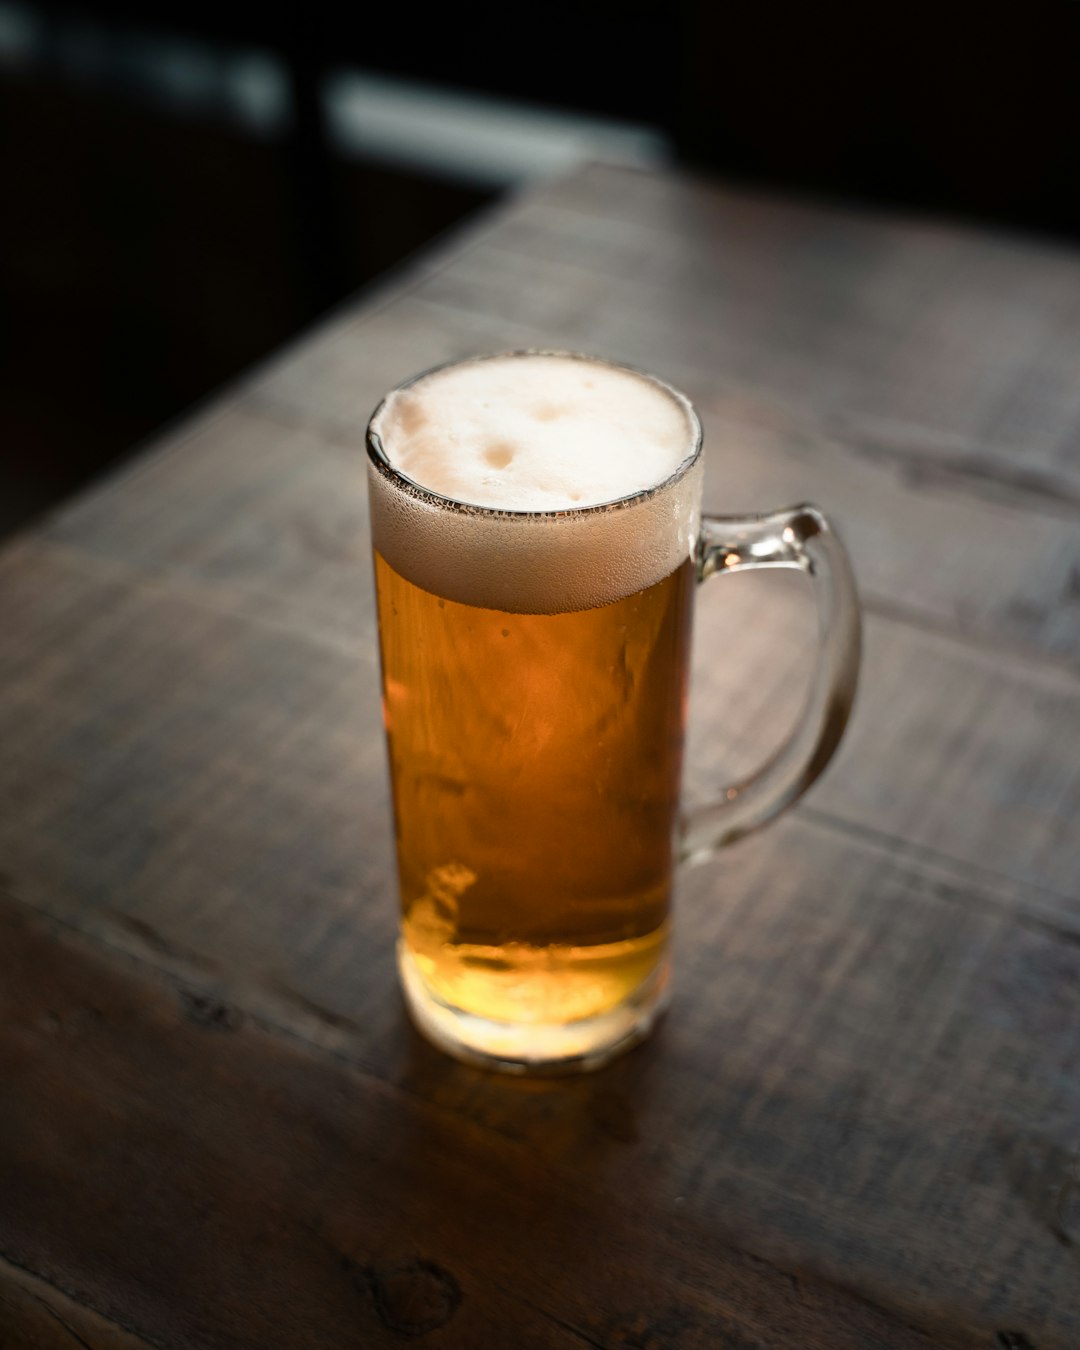 Perda do poder de compra do público freia reajuste do preço da cerveja nos bares